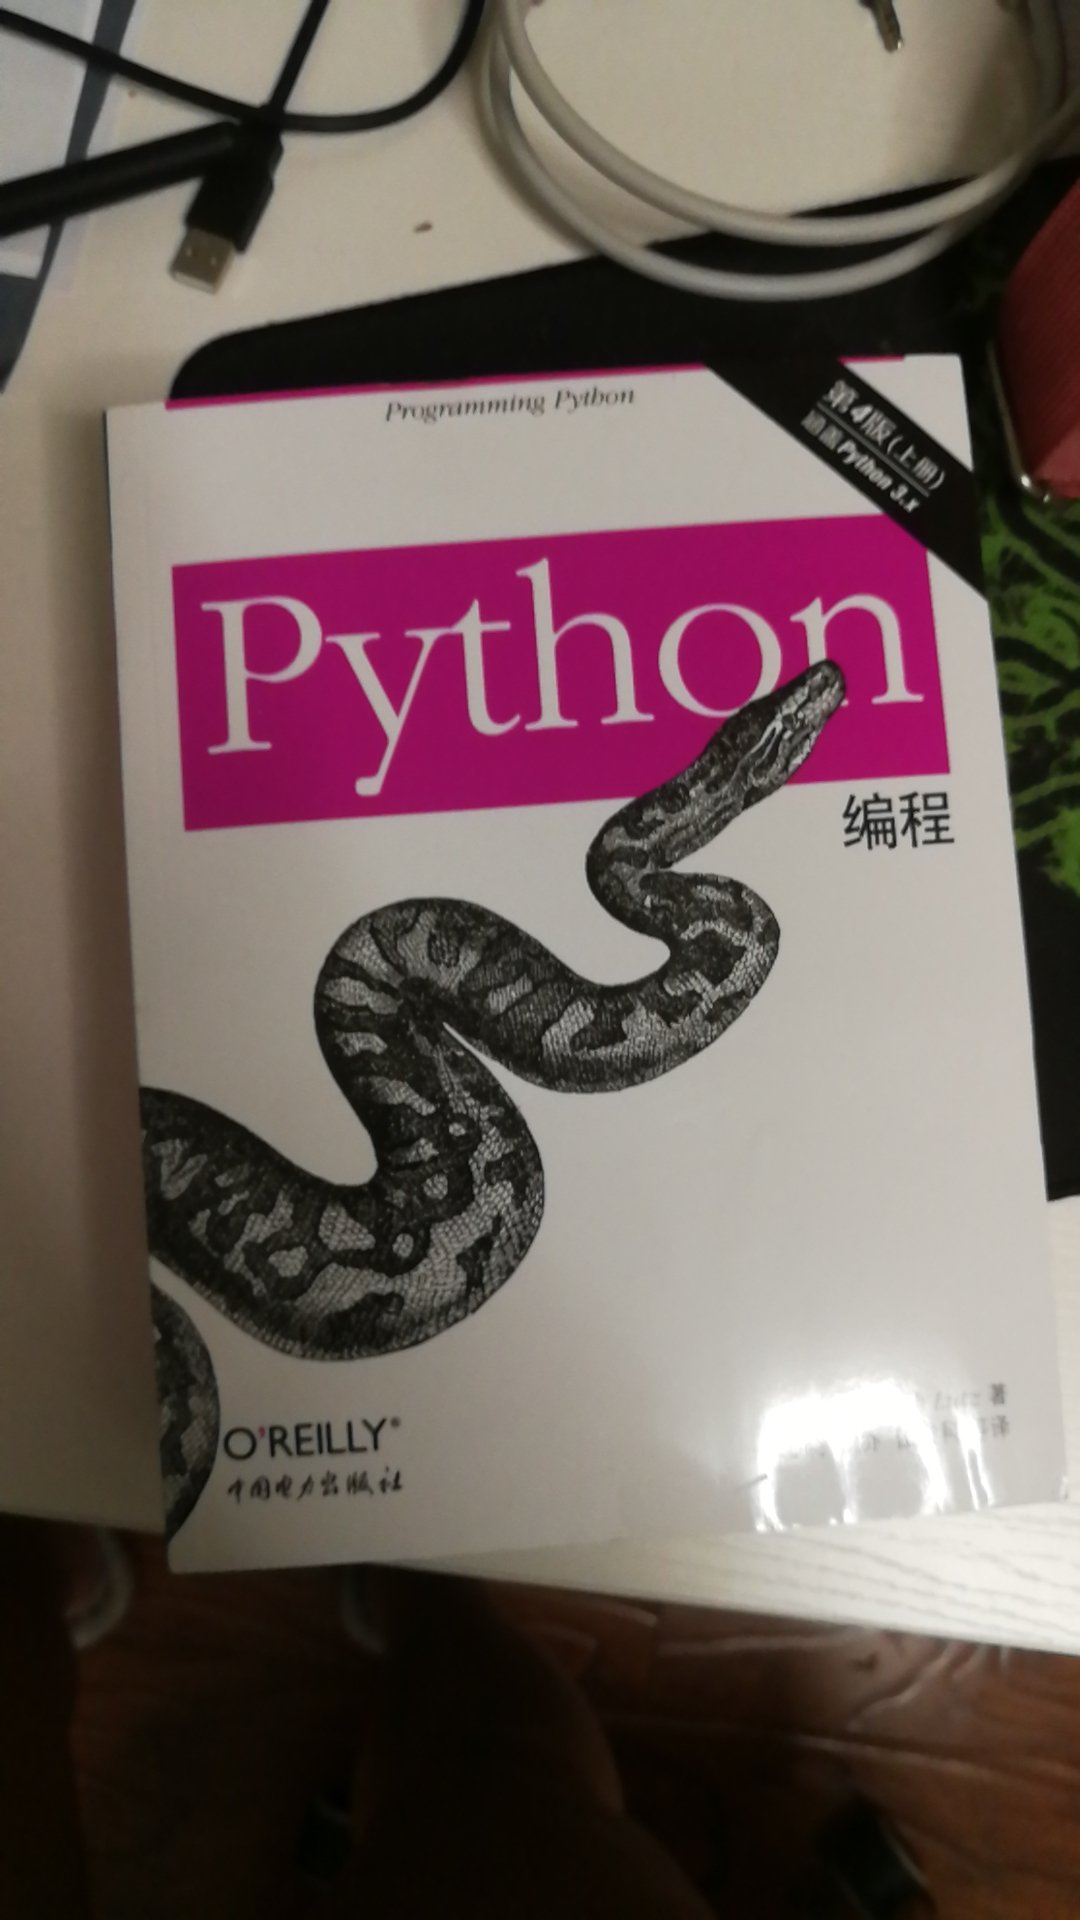 基本上是python编程最最经典的书籍了，内容非常详实，也非常细致，适合学习者使用